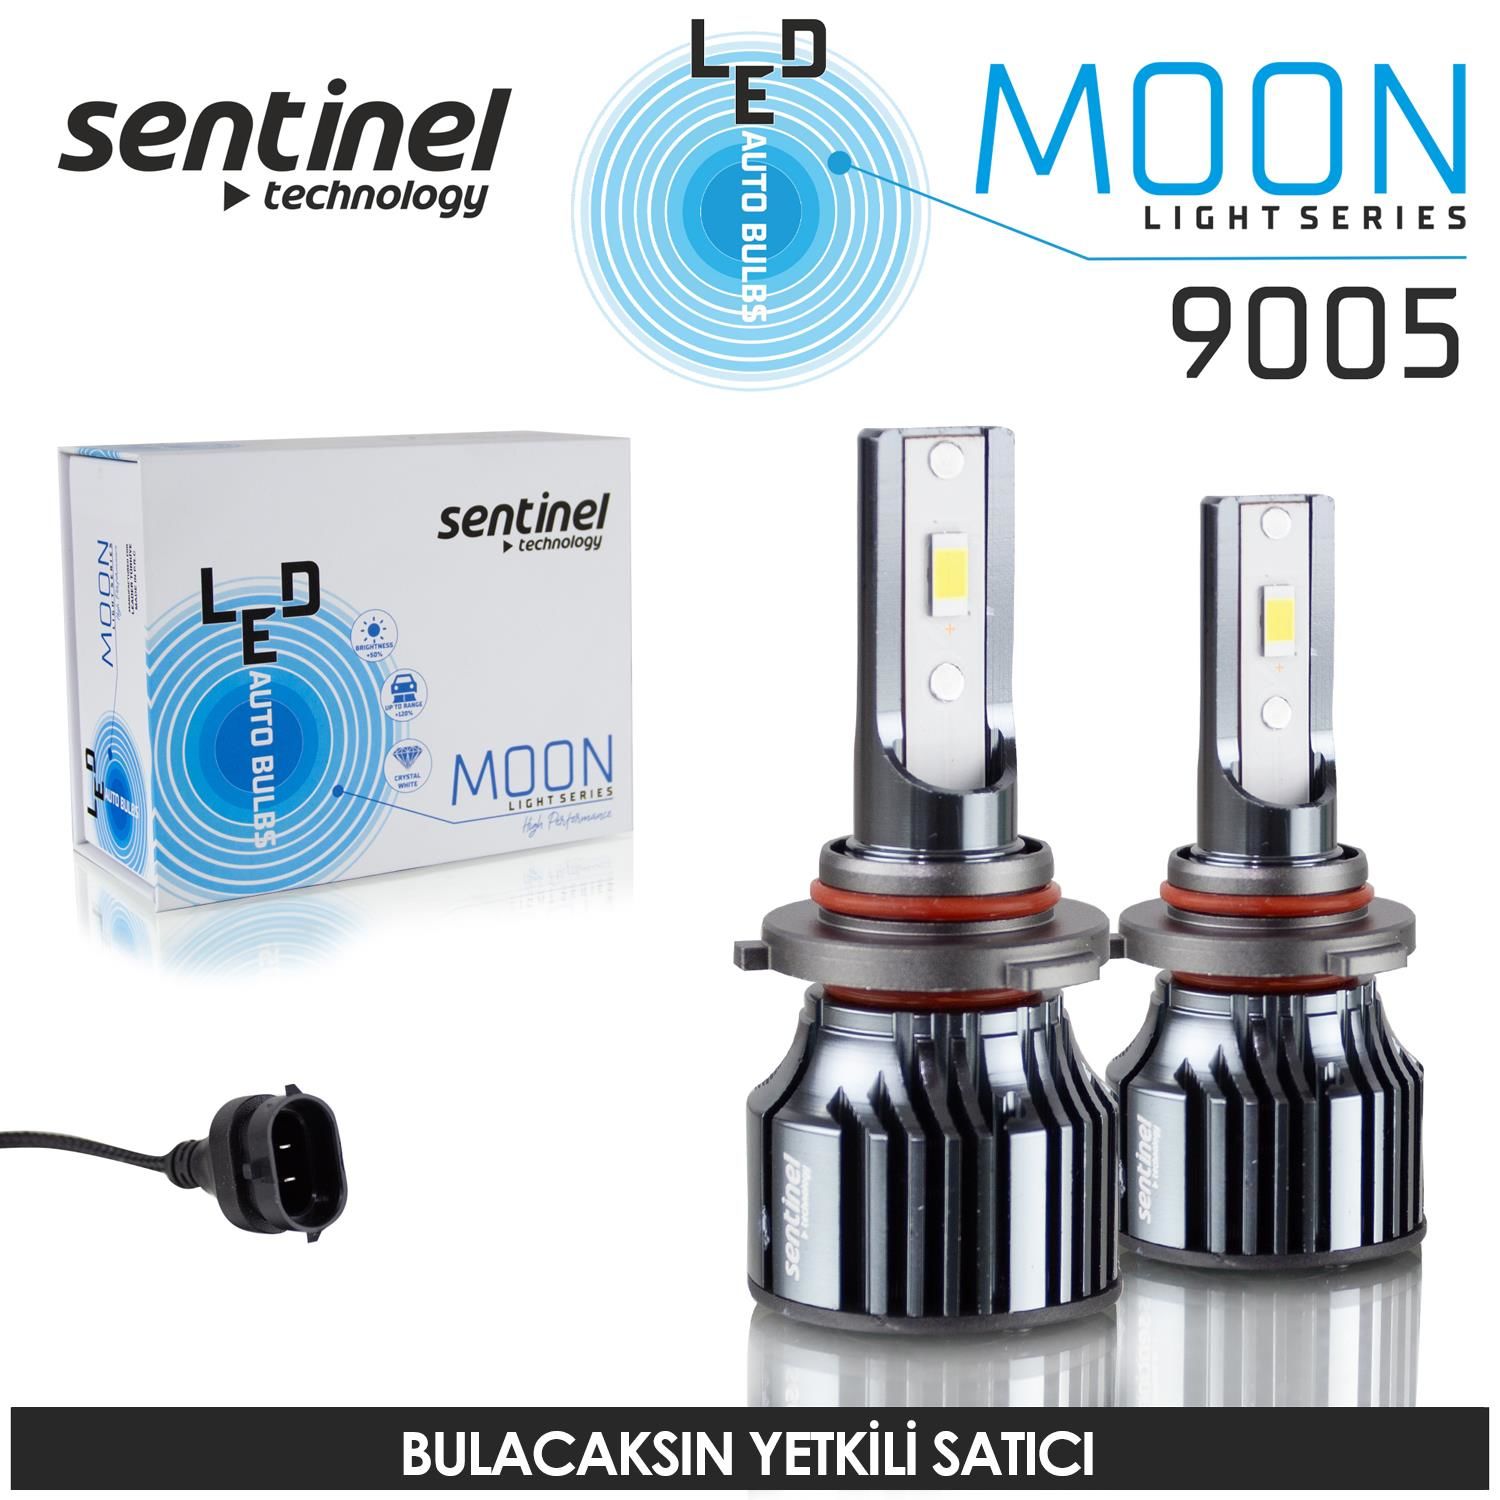 Sentinel Moon 9005-HB3 Led Xenon Ampülü 30w 12v 8000 Lumen 6500K